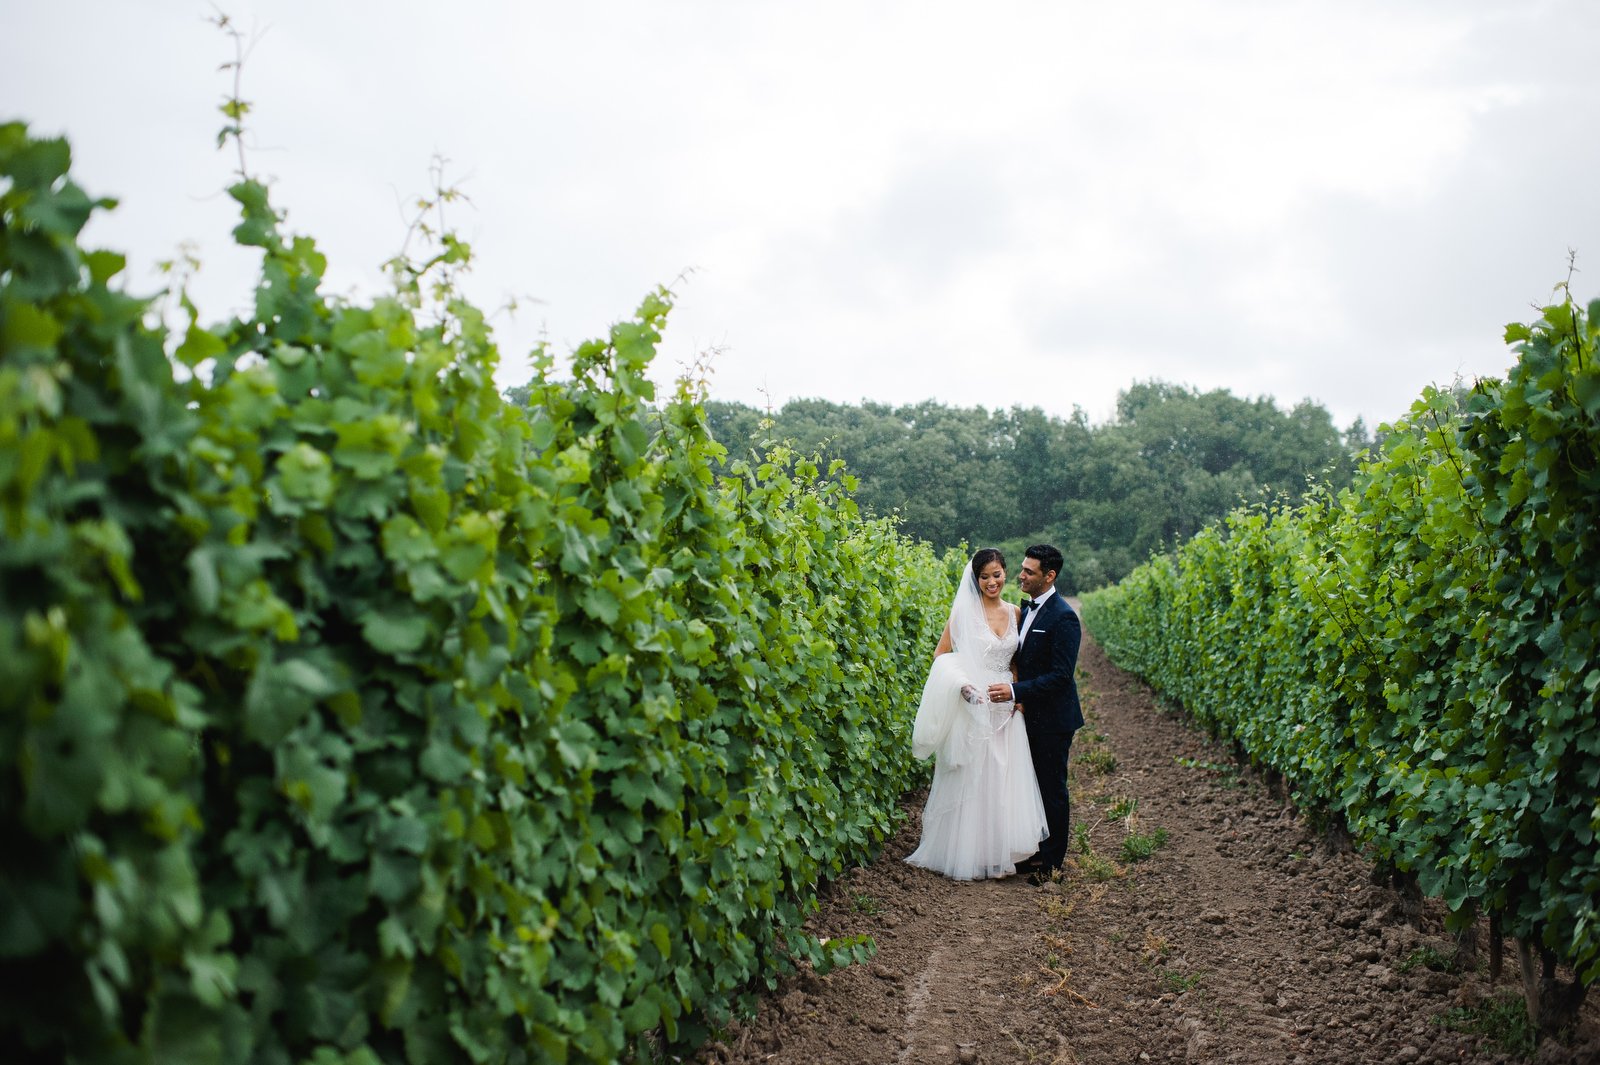 donna adil niagara vineyard wedding photography jenn dave stark 110